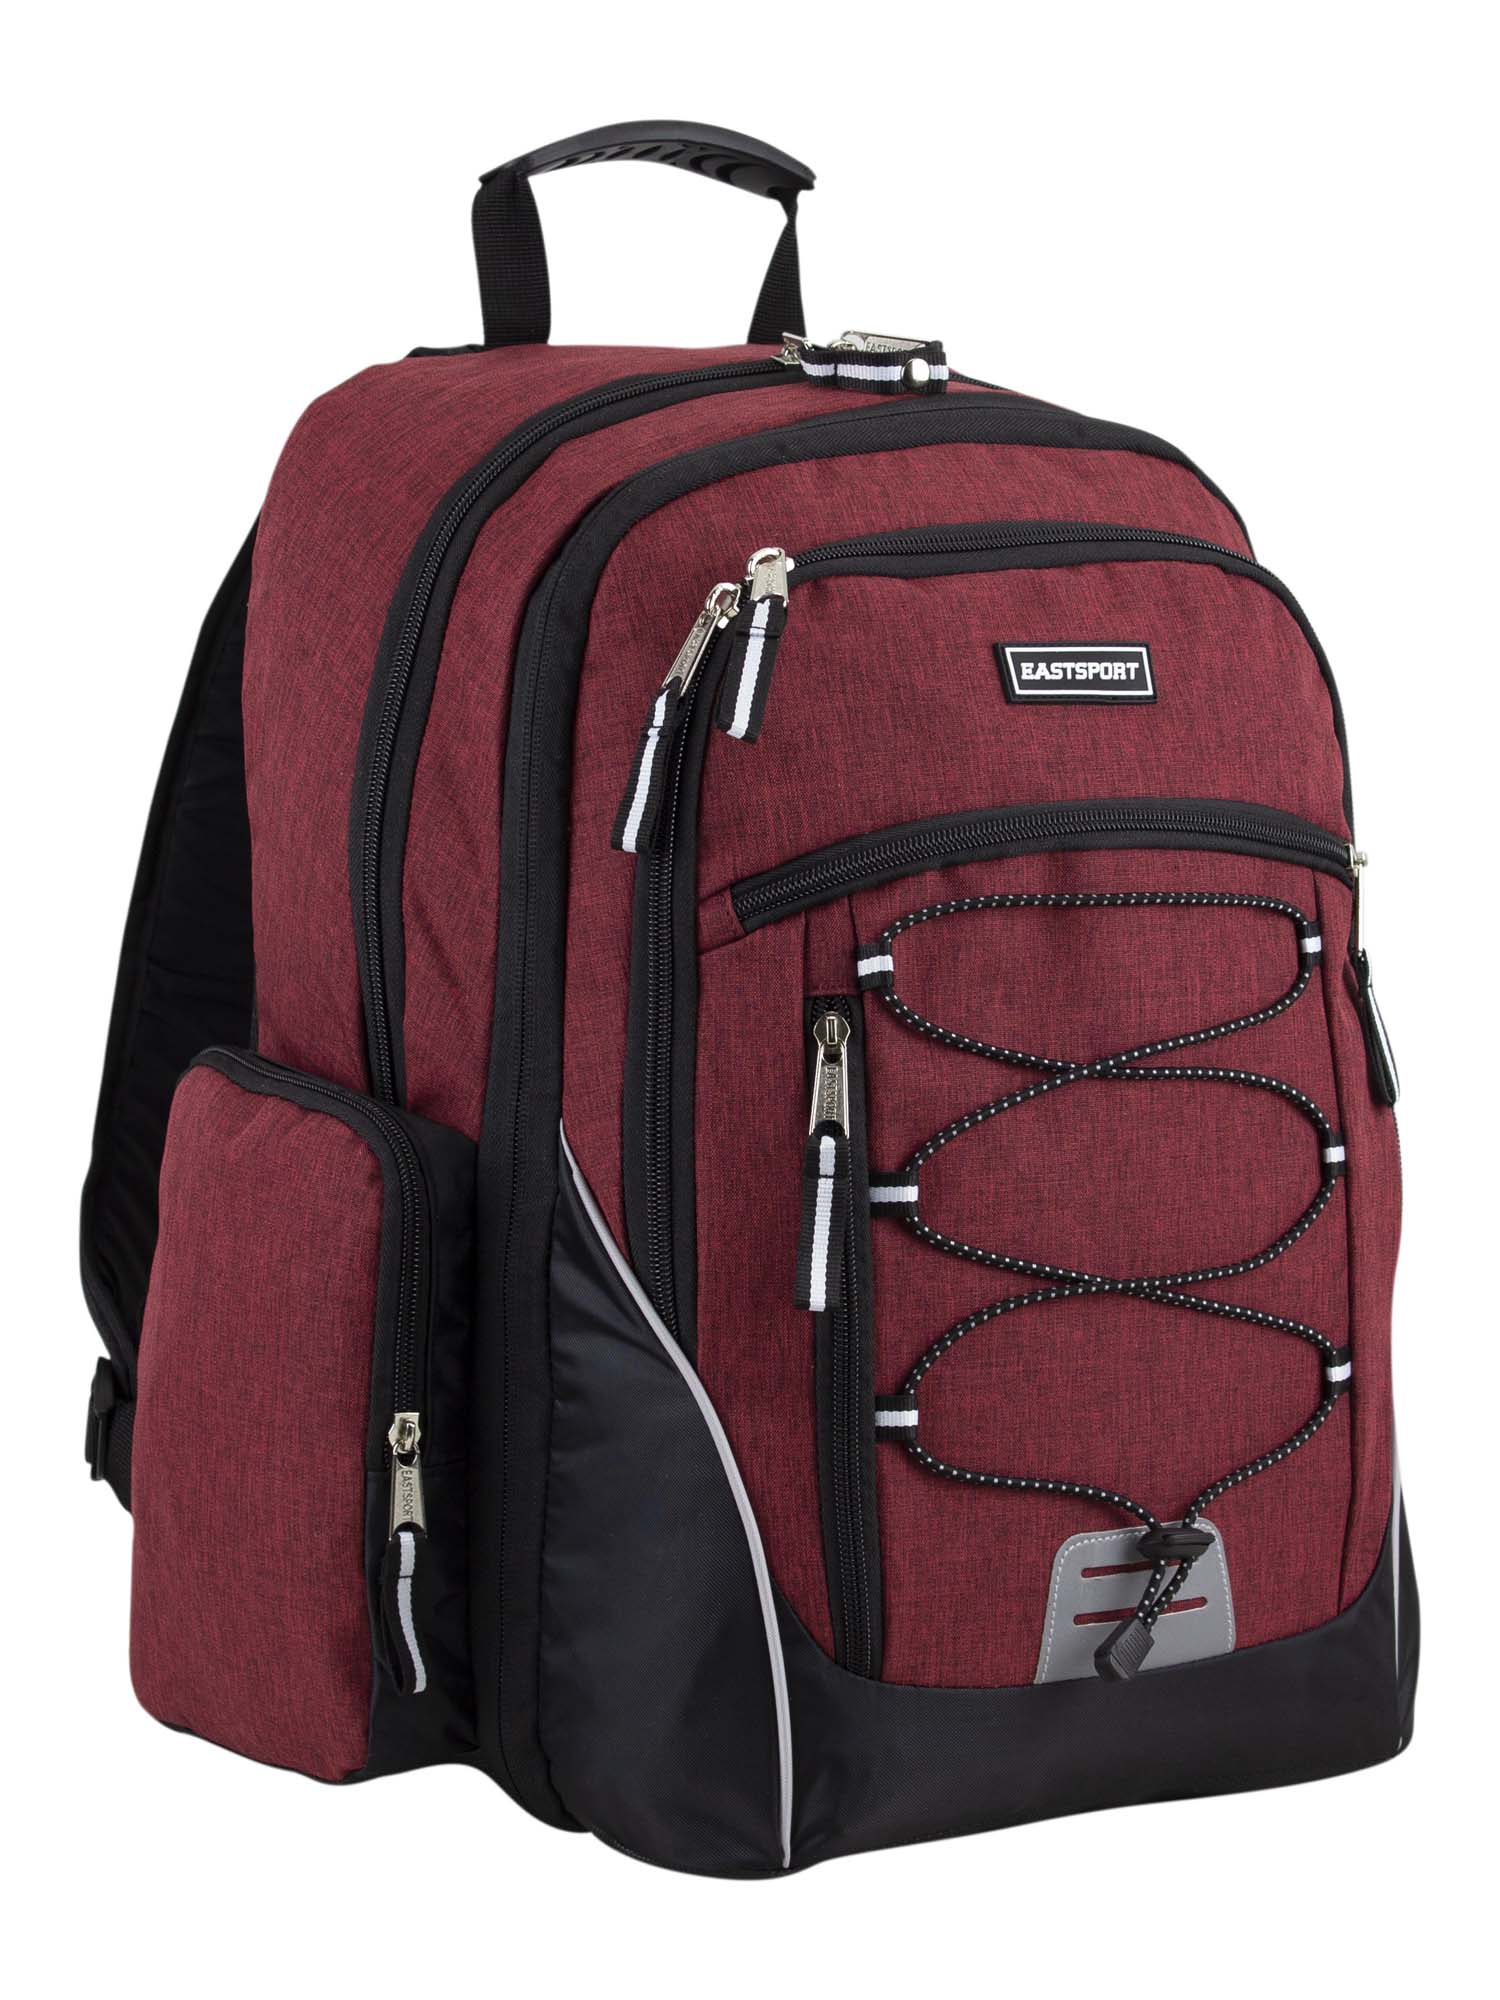 Eastsport Optimus Backpack, Maroon - image 1 of 7